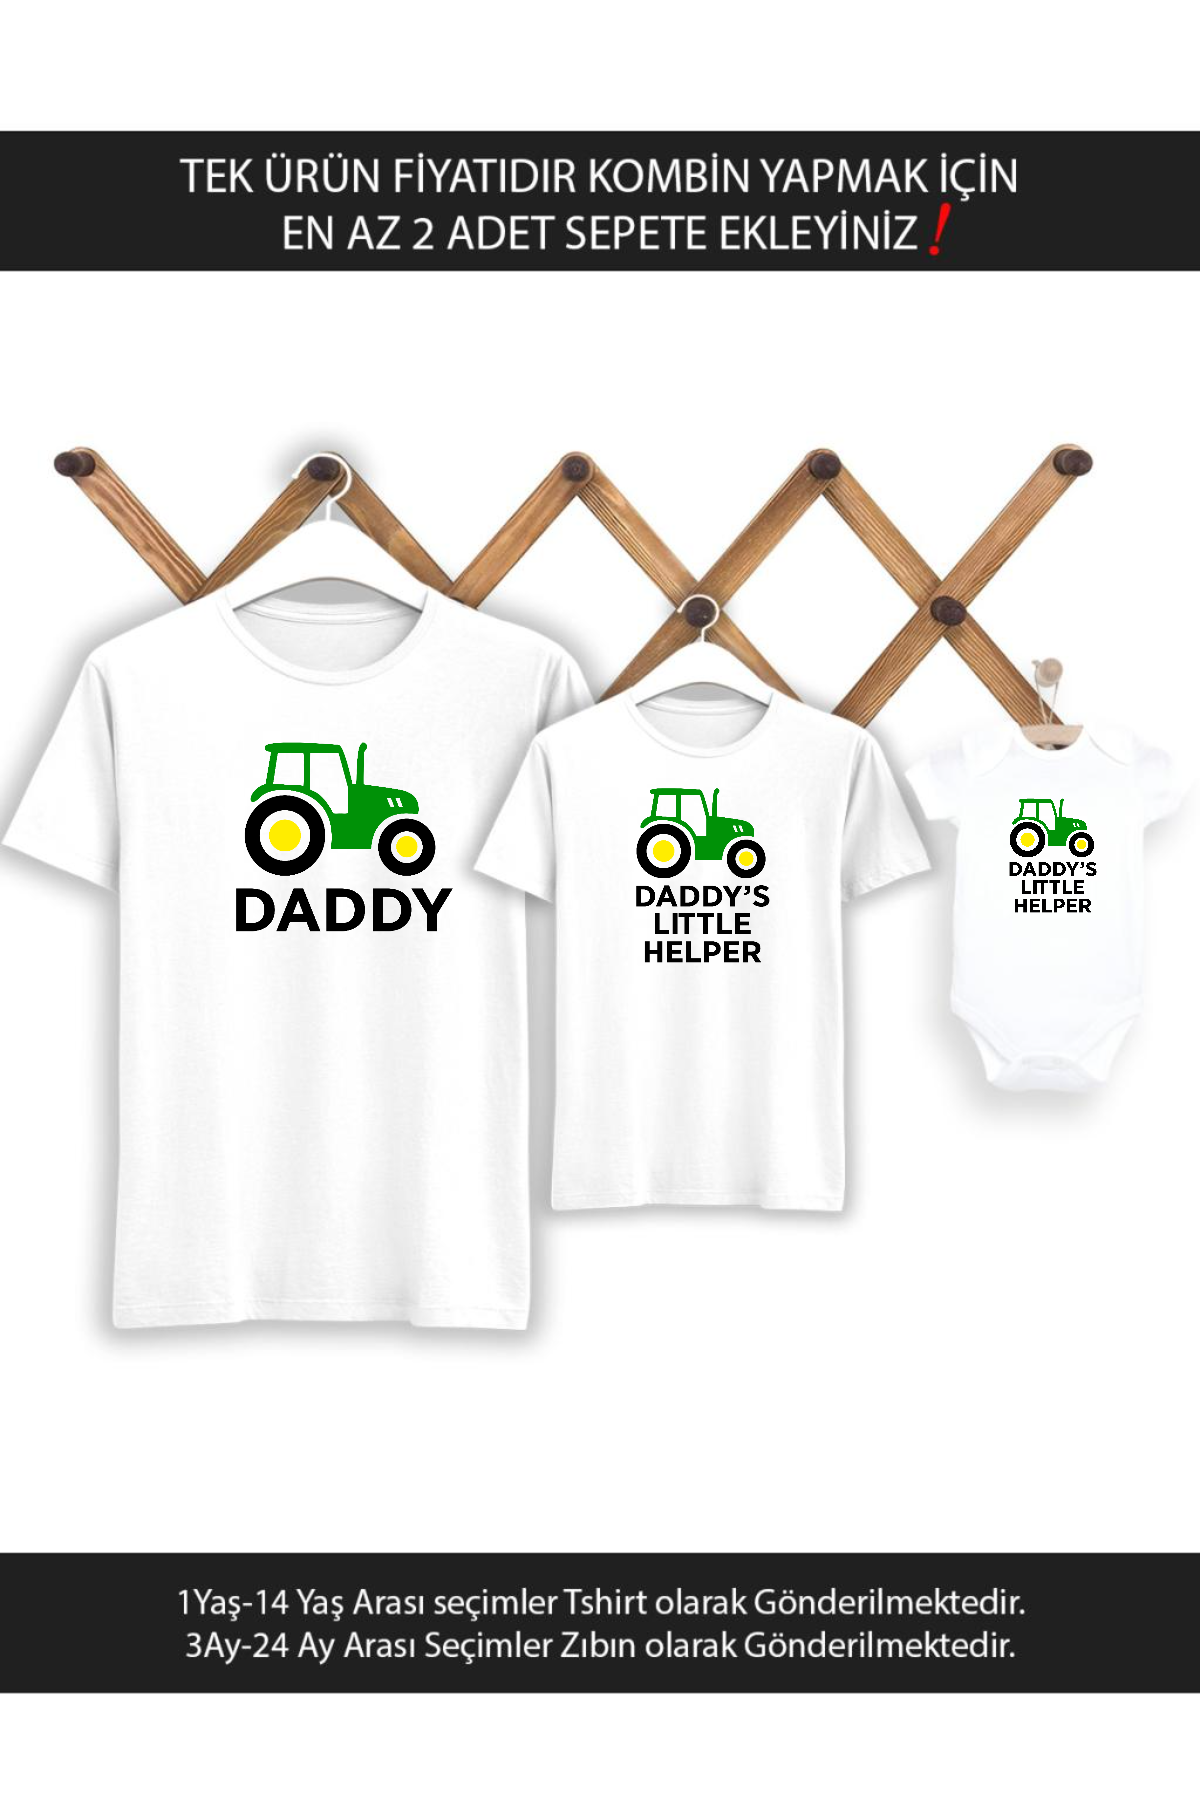 Baba Oğul Kız Traktör Daddy Helper (TEK ÜRÜN FİYATIDIR KOMBİN YAPMAK İÇİN EN AZ 2 ADET SEPETE EKLEYİ